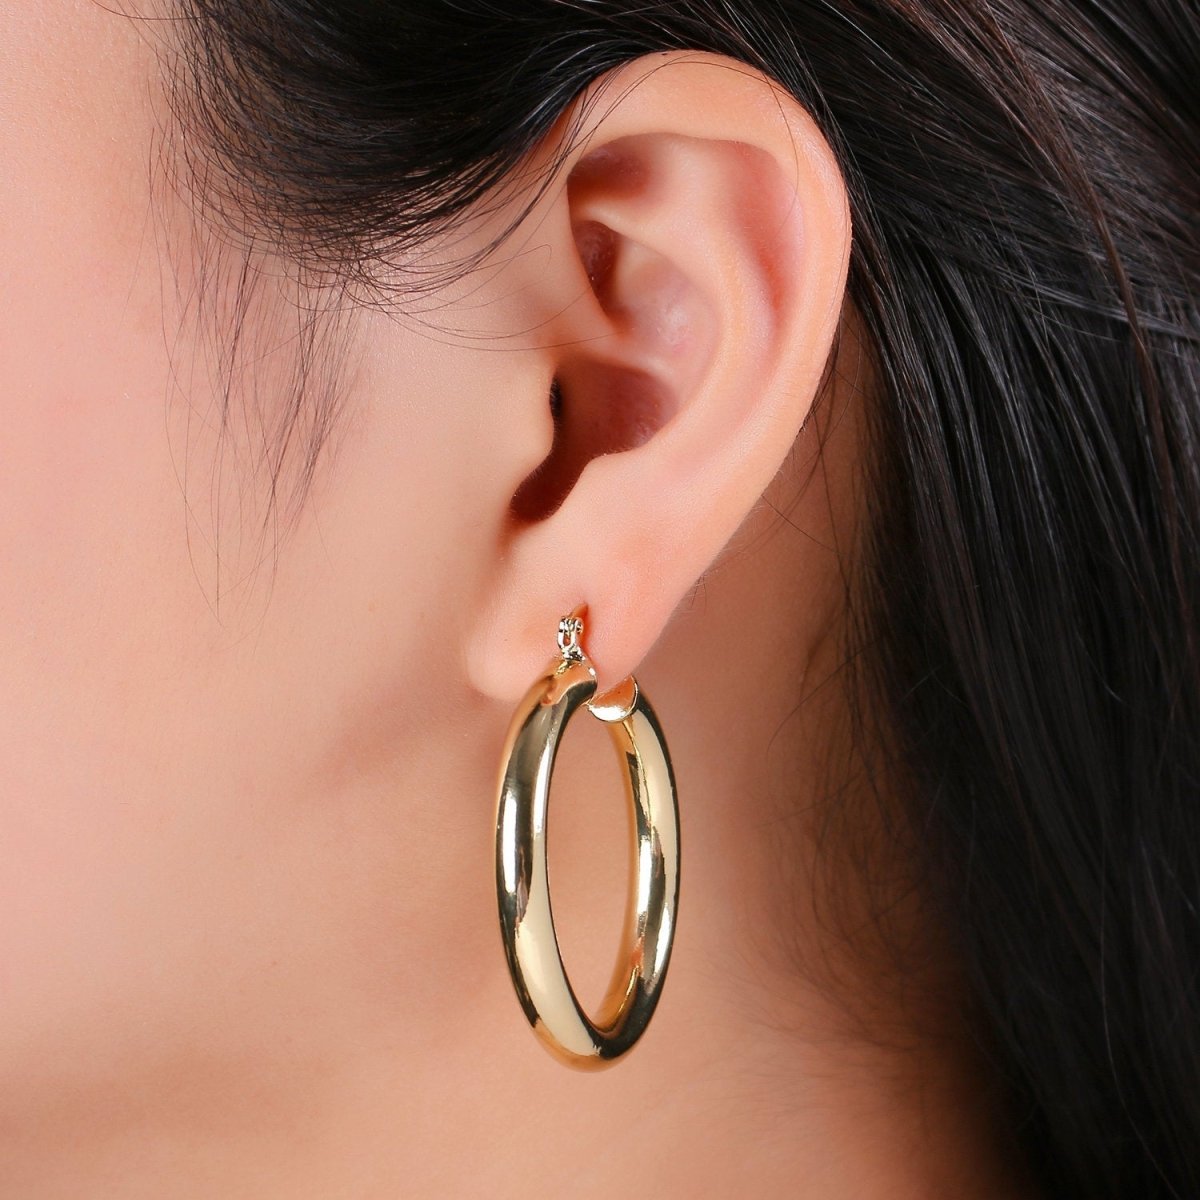 Chunky Lightweight Hoop Earrings - Hollow Light Hoop Earrings - Big Gold Hoops - Simple Everyday Earrings 40mm, 35mm, 30mm, 25mm, 20mm Q-460 - Q-463 - DLUXCA